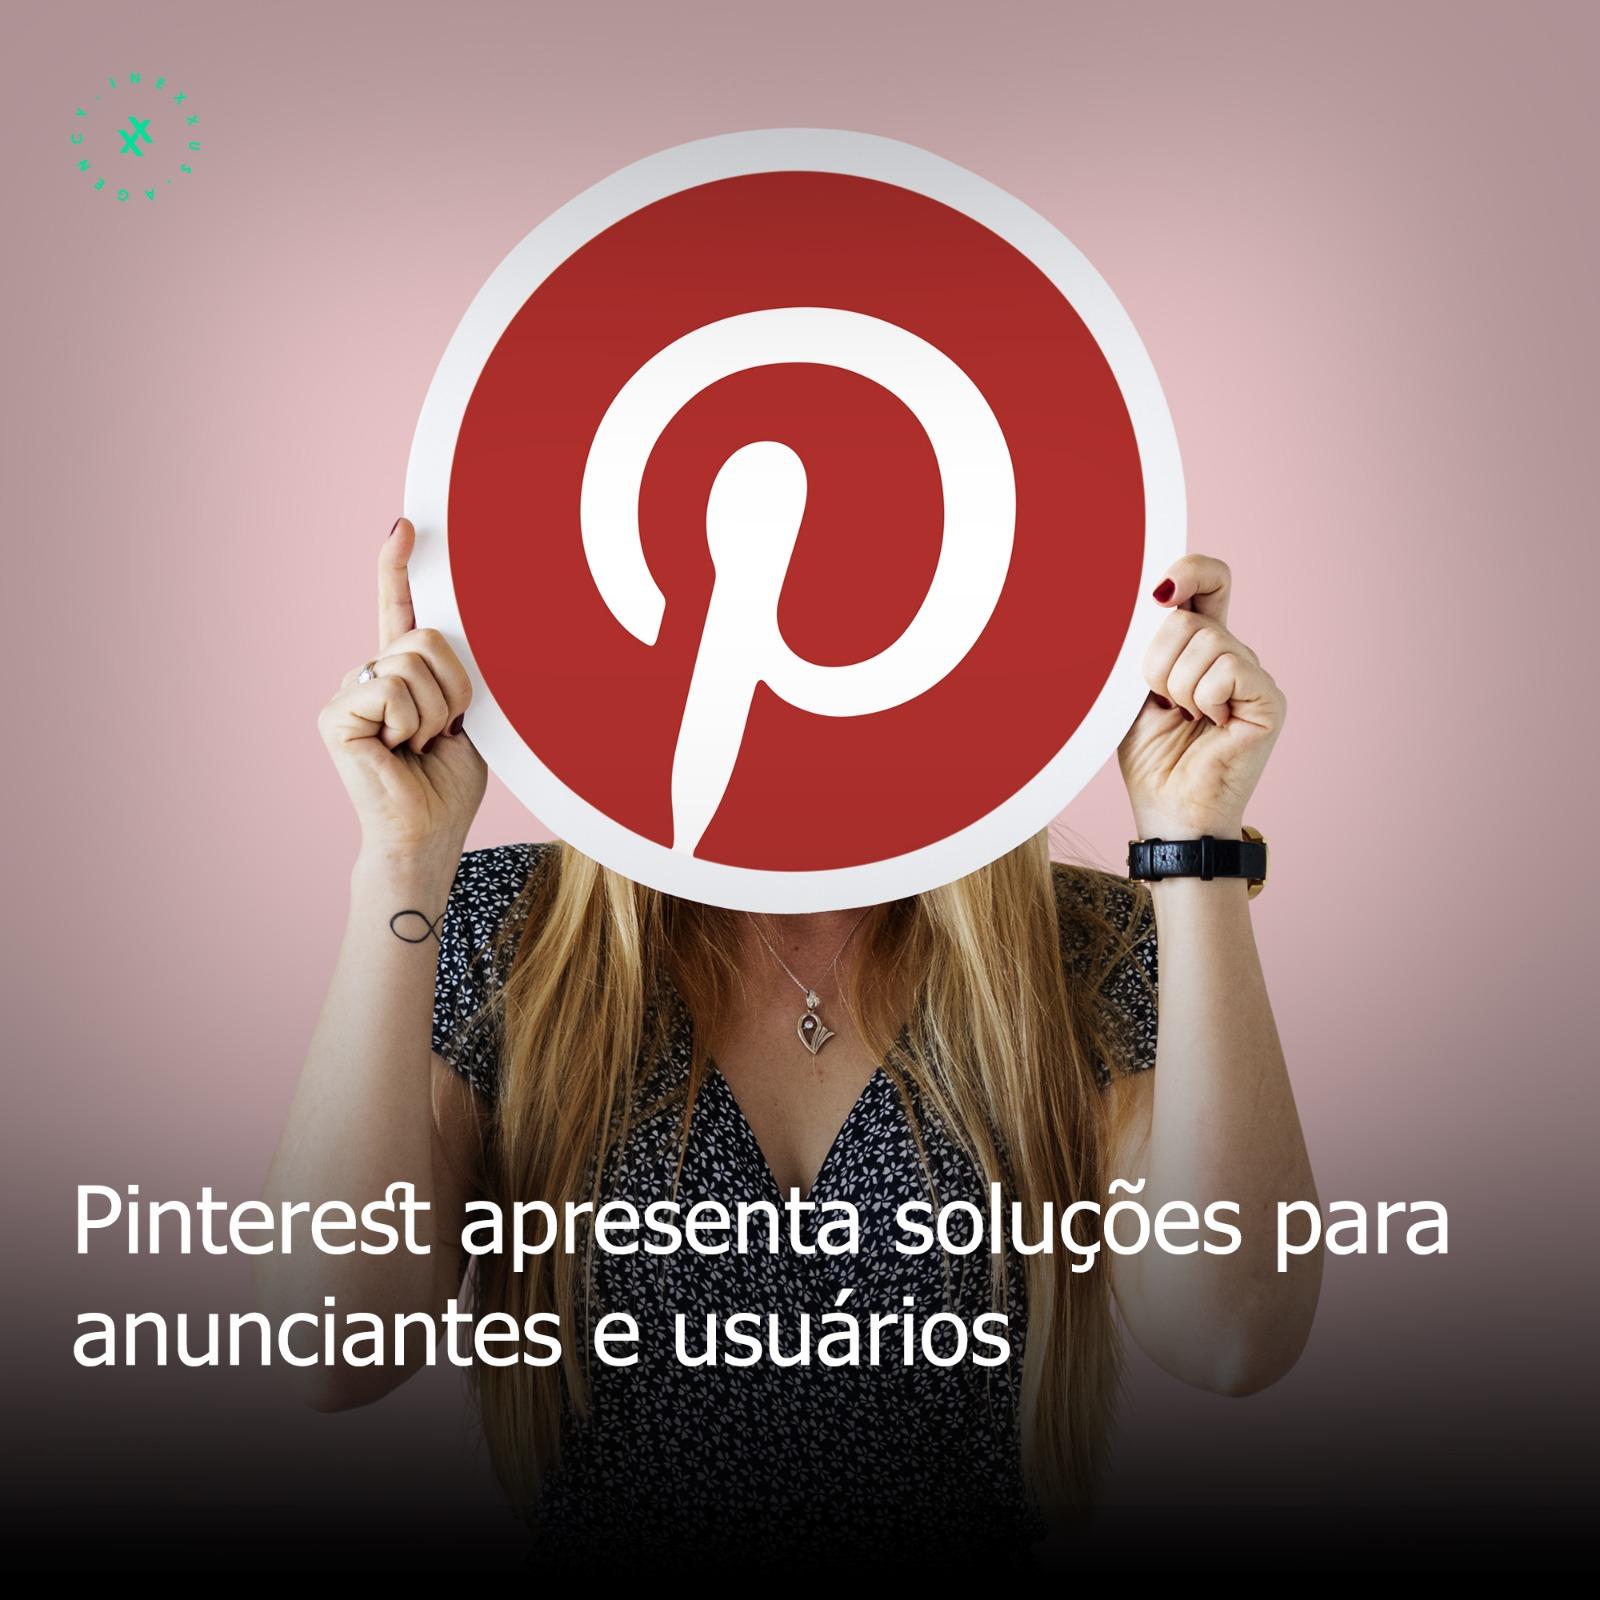 Pinterest apresenta soluções para anunciantes e usuários.